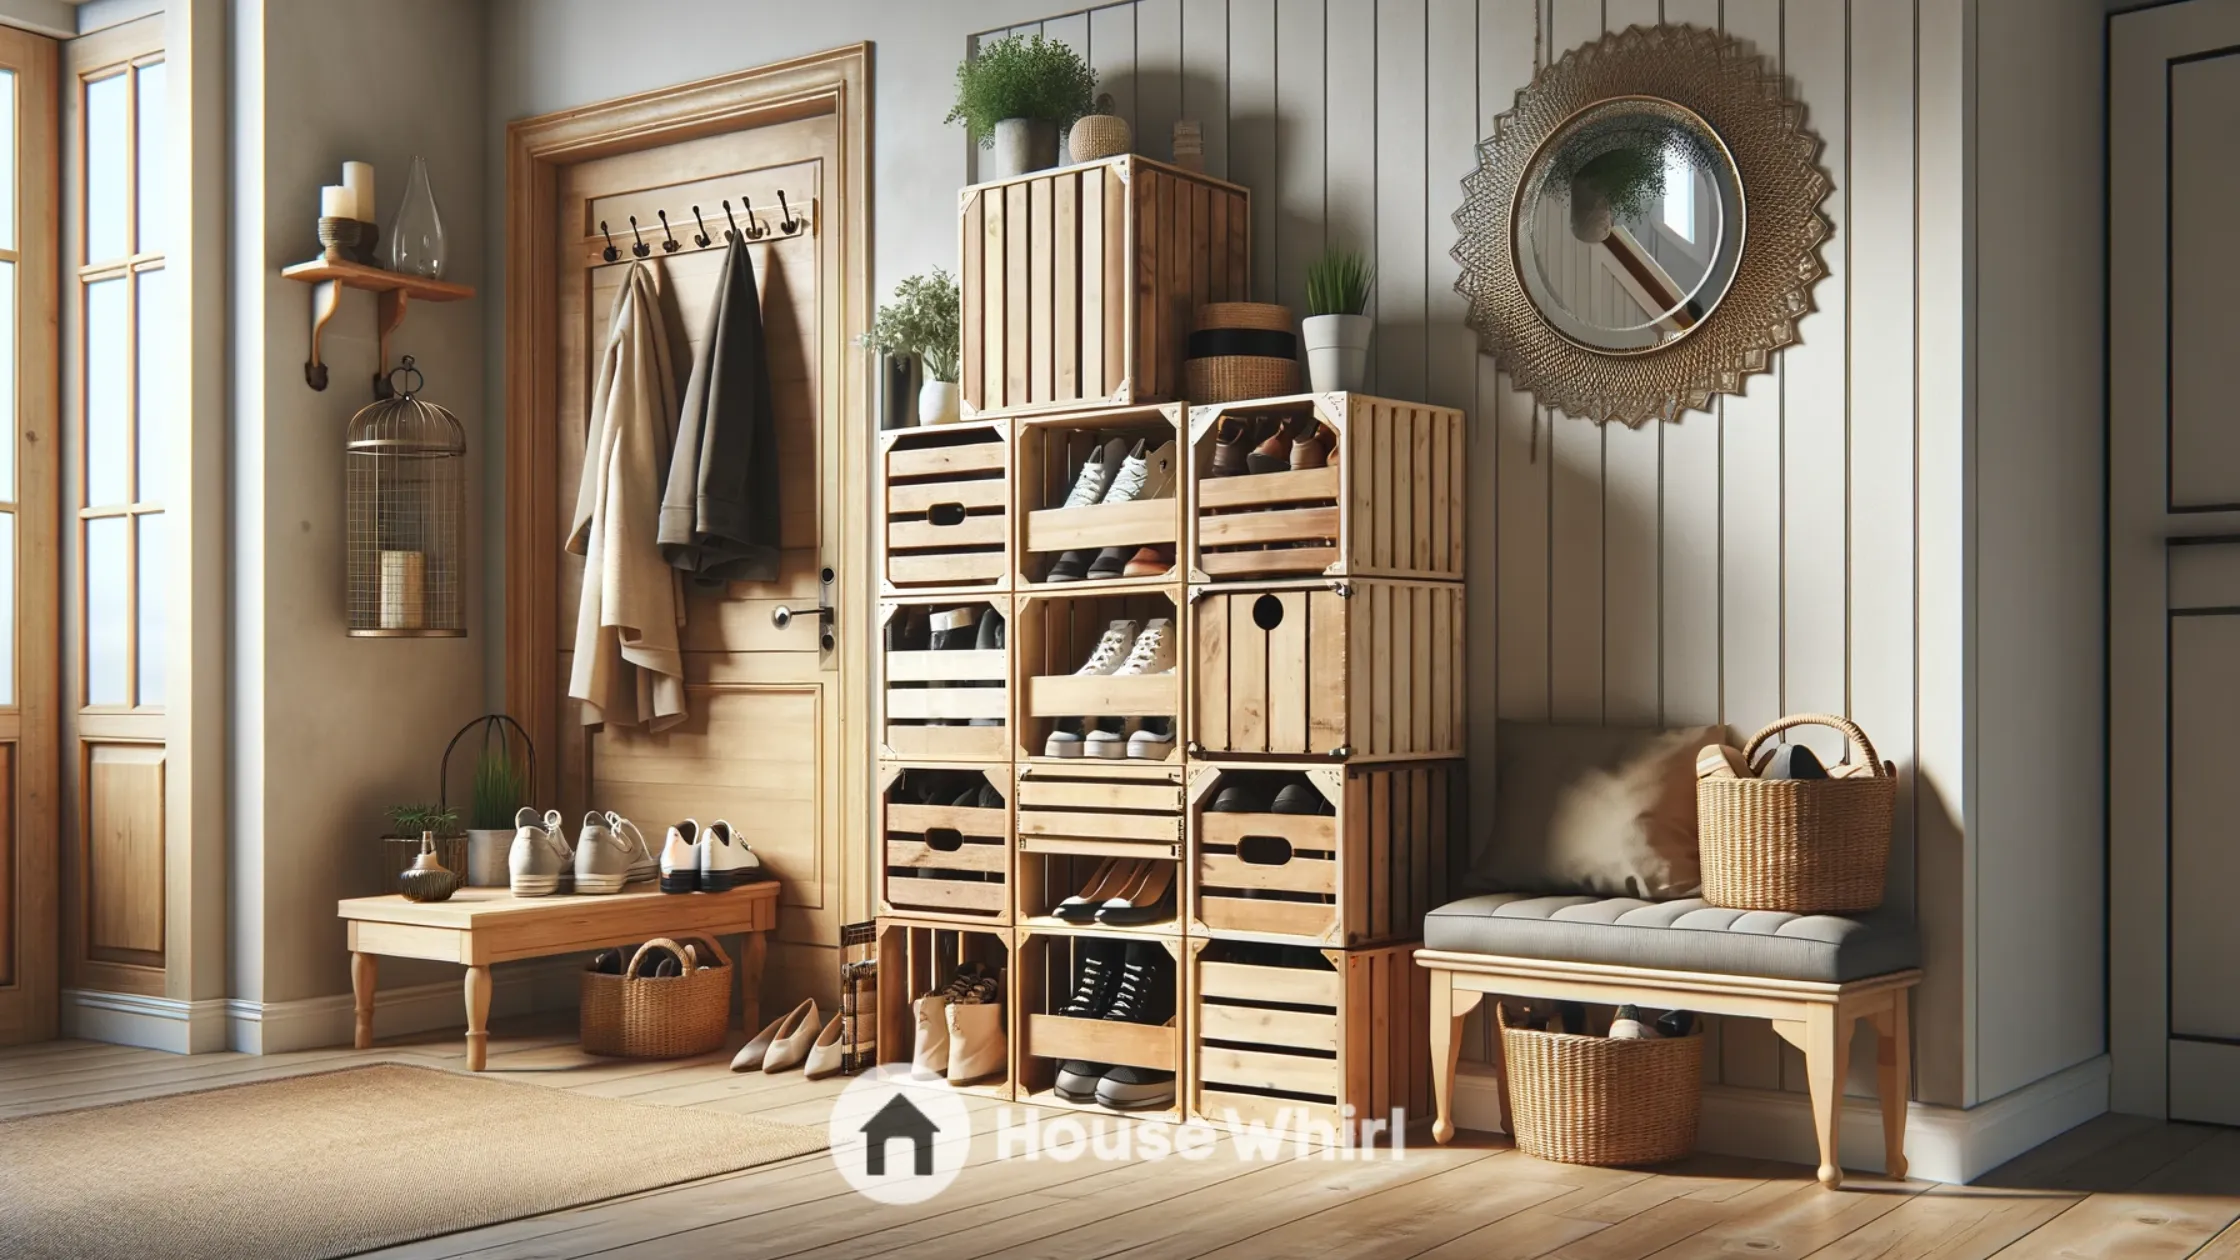 Wooden Crate Storage